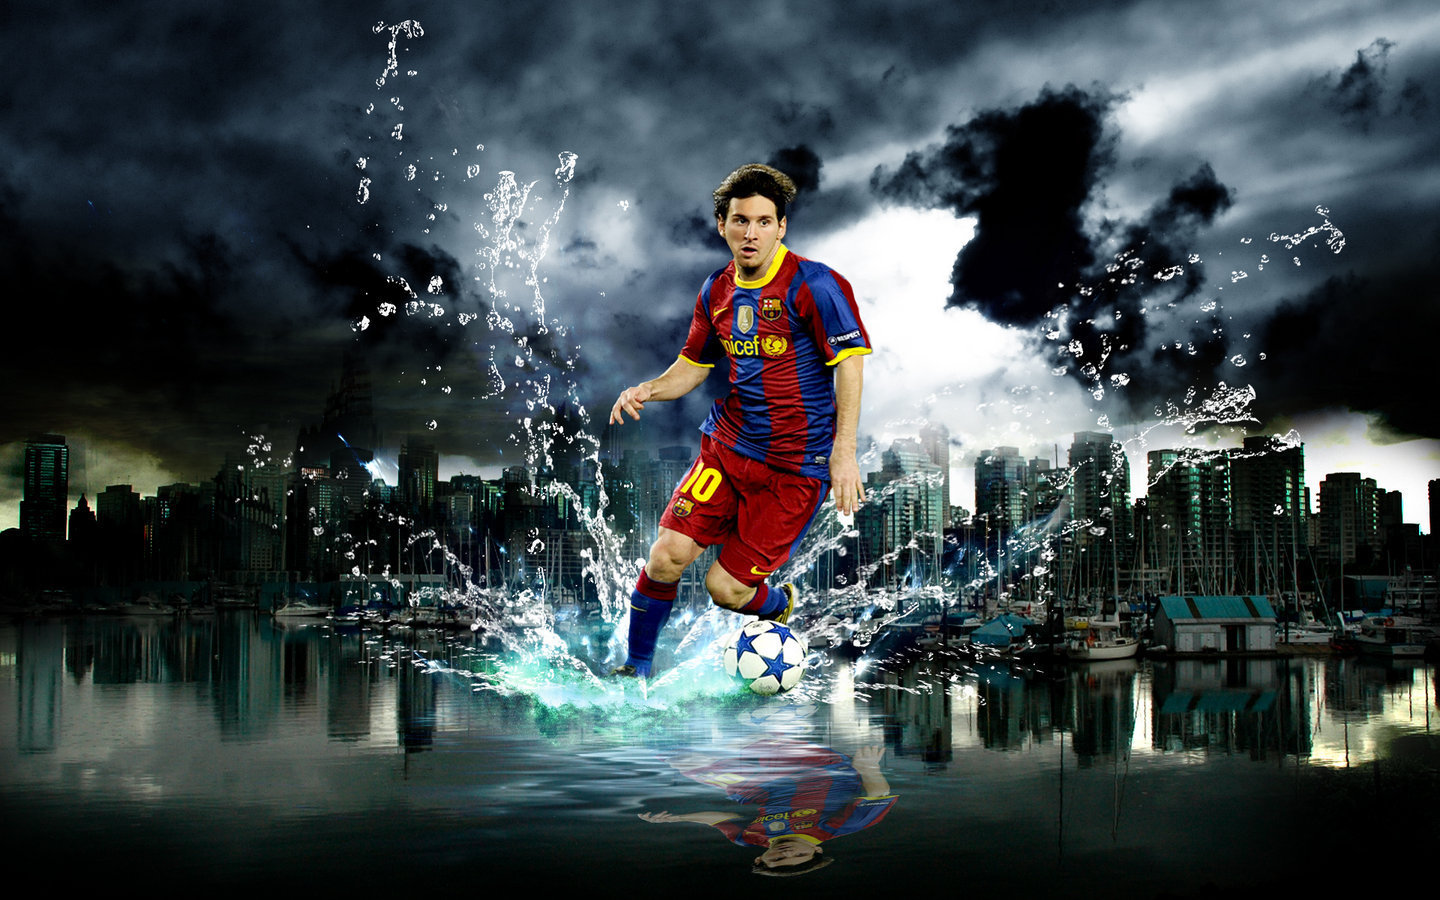 Hãy ngắm nhìn những khoảnh khắc đỉnh cao của Lionel Messi - một trong những cầu thủ tài ba nhất thế giới.